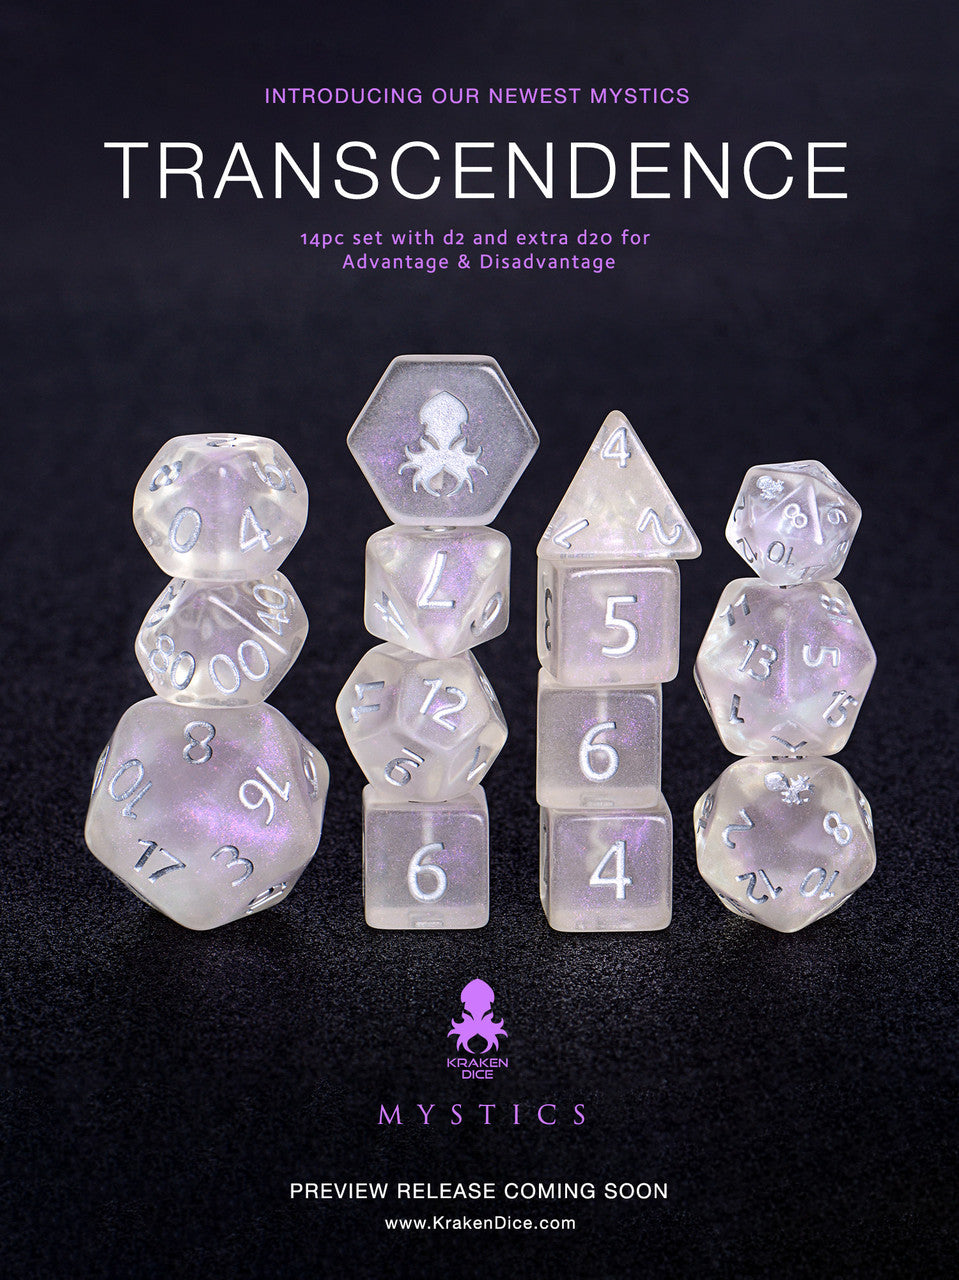 Transcendence Silver Ink Mystics 14pc Dice Set With Kraken Logo